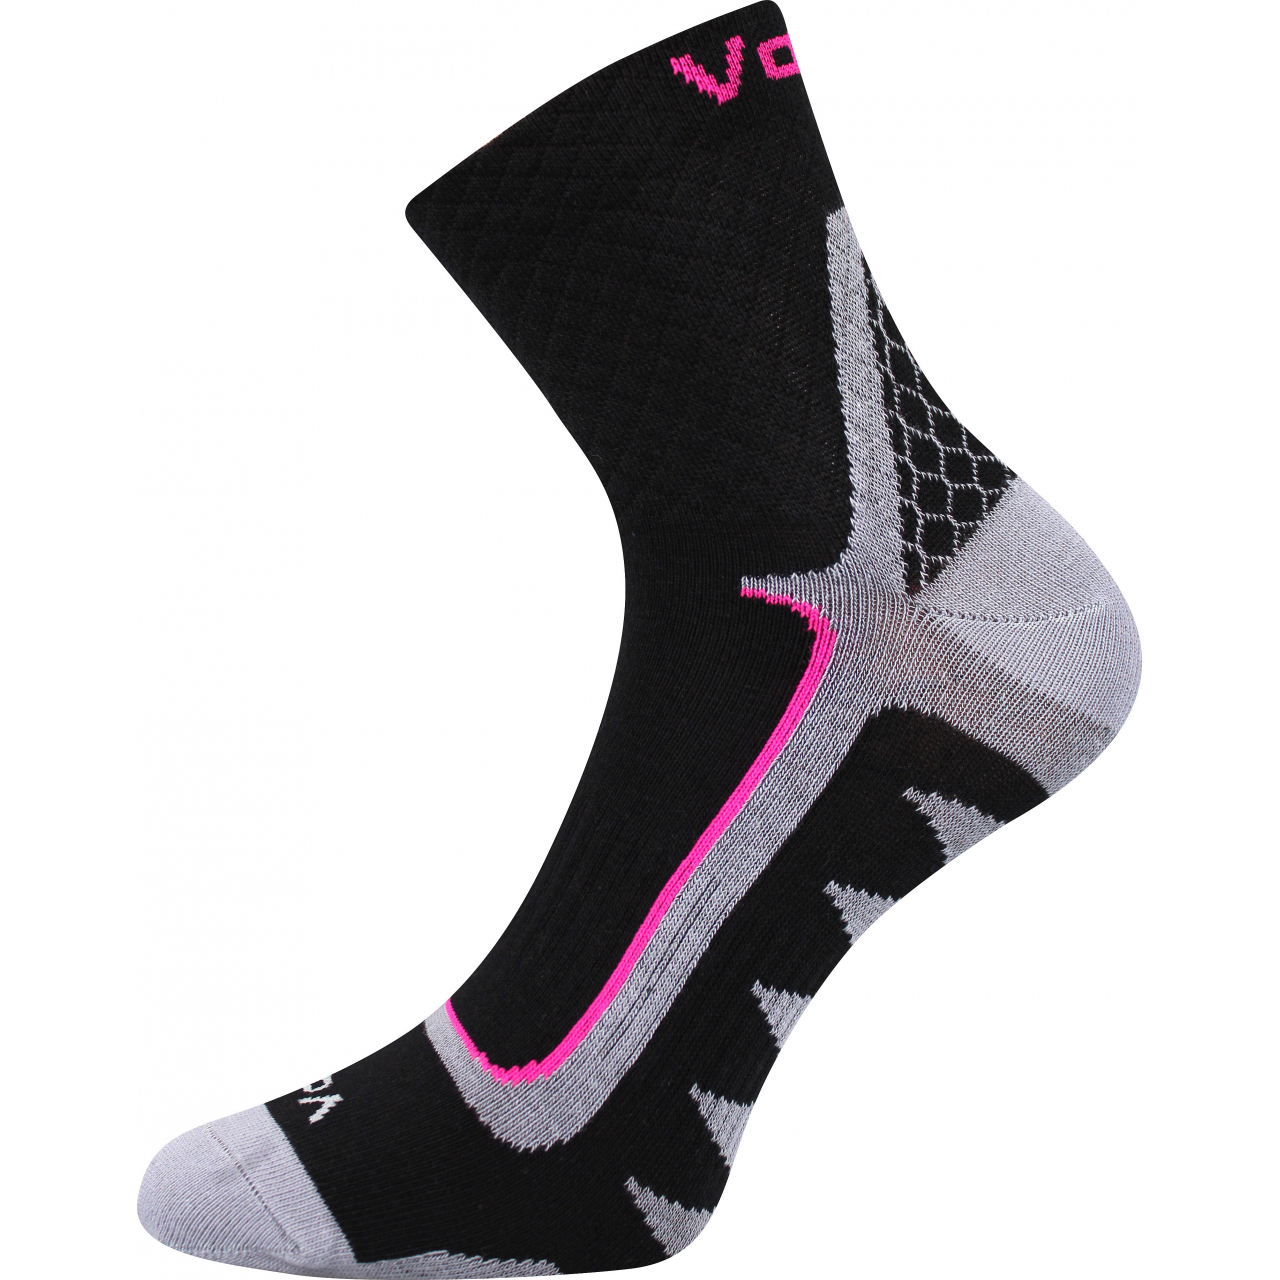 Ponožky sportovní unisex Voxx Kryptox - černé-růžové, 35-38